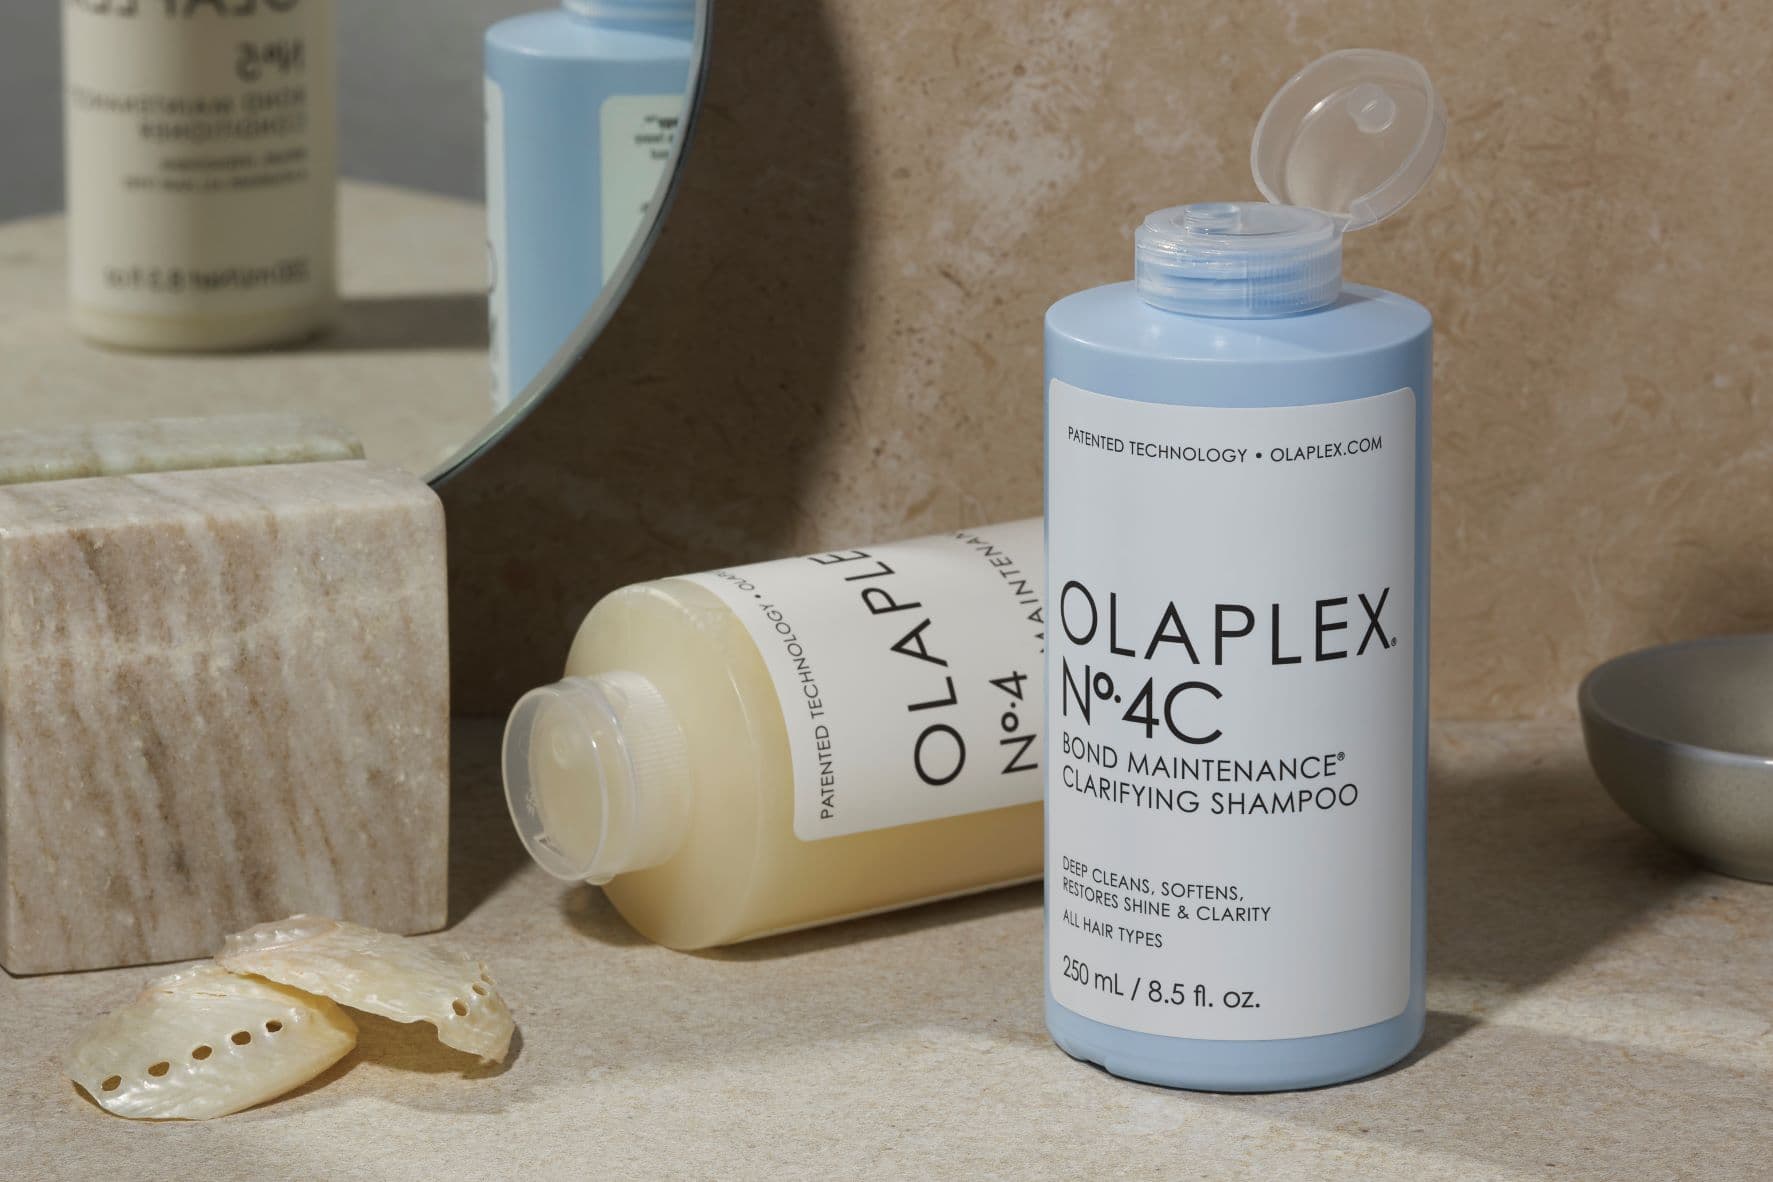 We Try Out Olaplex No.4C Clarifying Shampoo